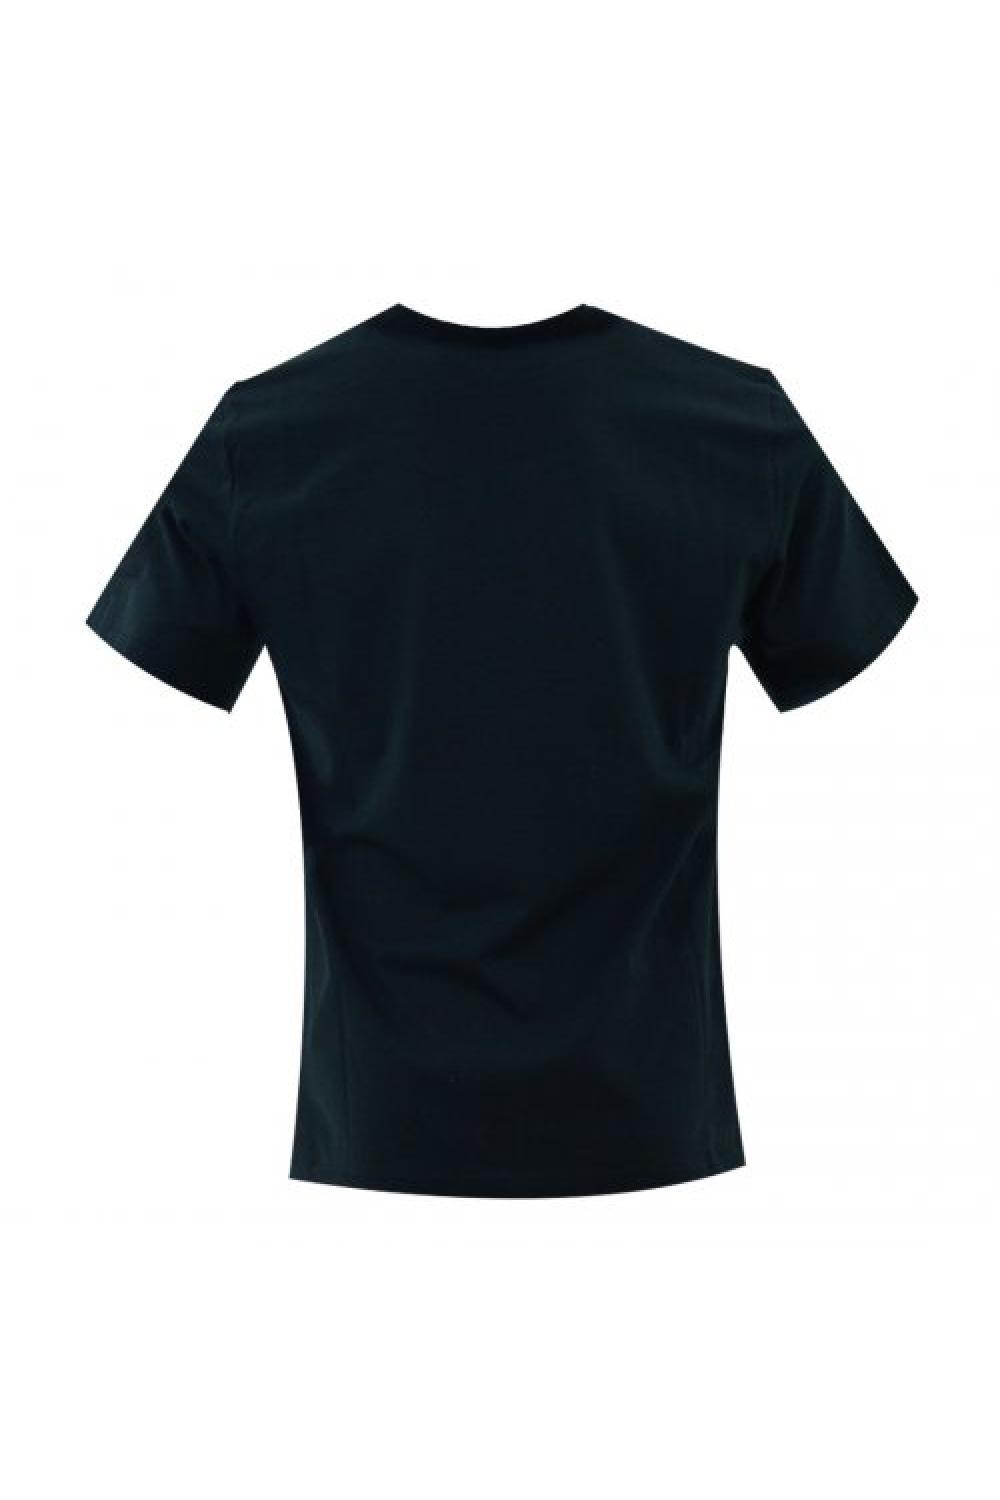 CONVERSE T-shirt Eight Bit Unisex - Μαύρο (10022933-A01)